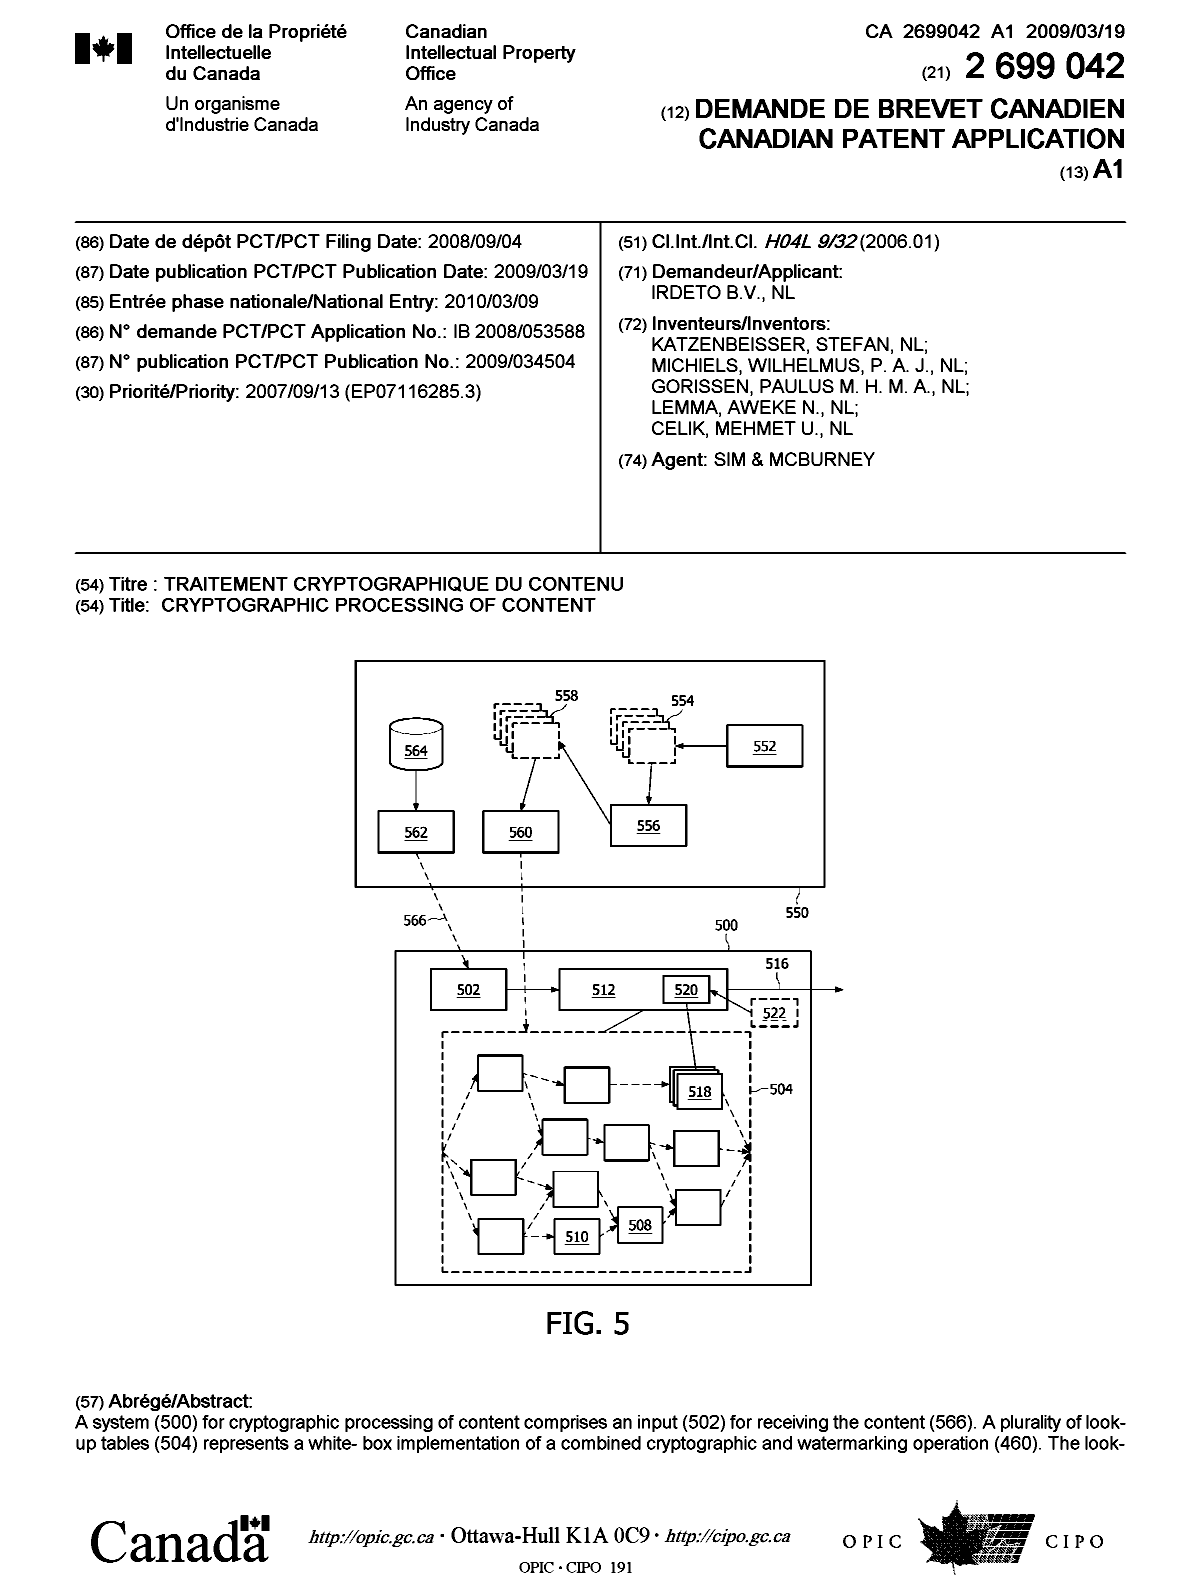 Document de brevet canadien 2699042. Page couverture 20100519. Image 1 de 2